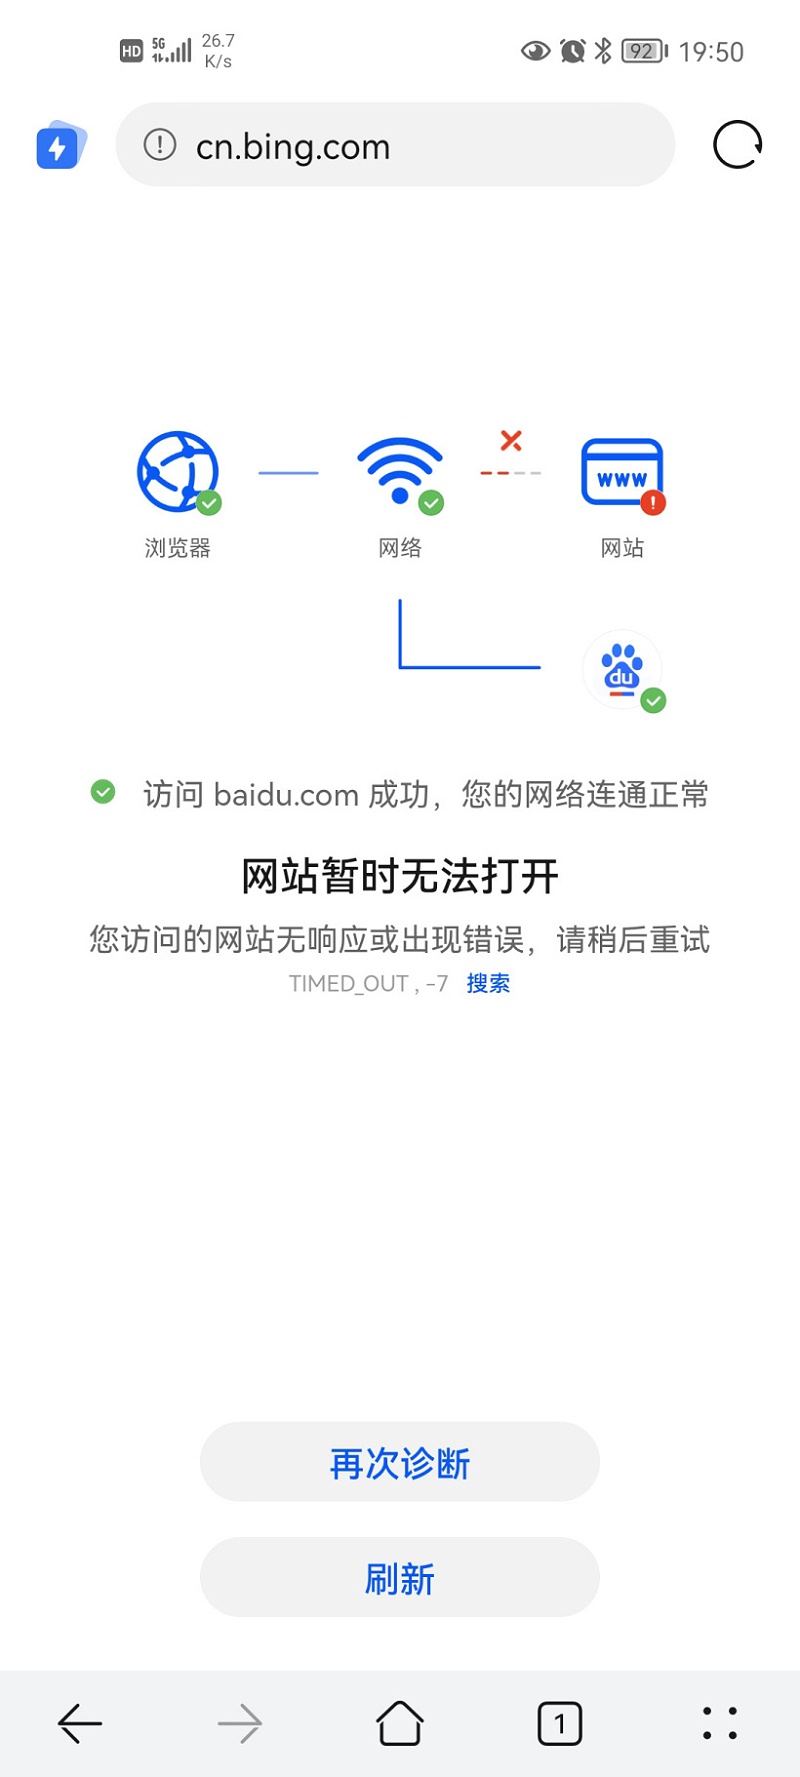 微软必应在中国内地暂停“搜索自动建议”功能30天28BECE3A6B2_size123_w820_h1822